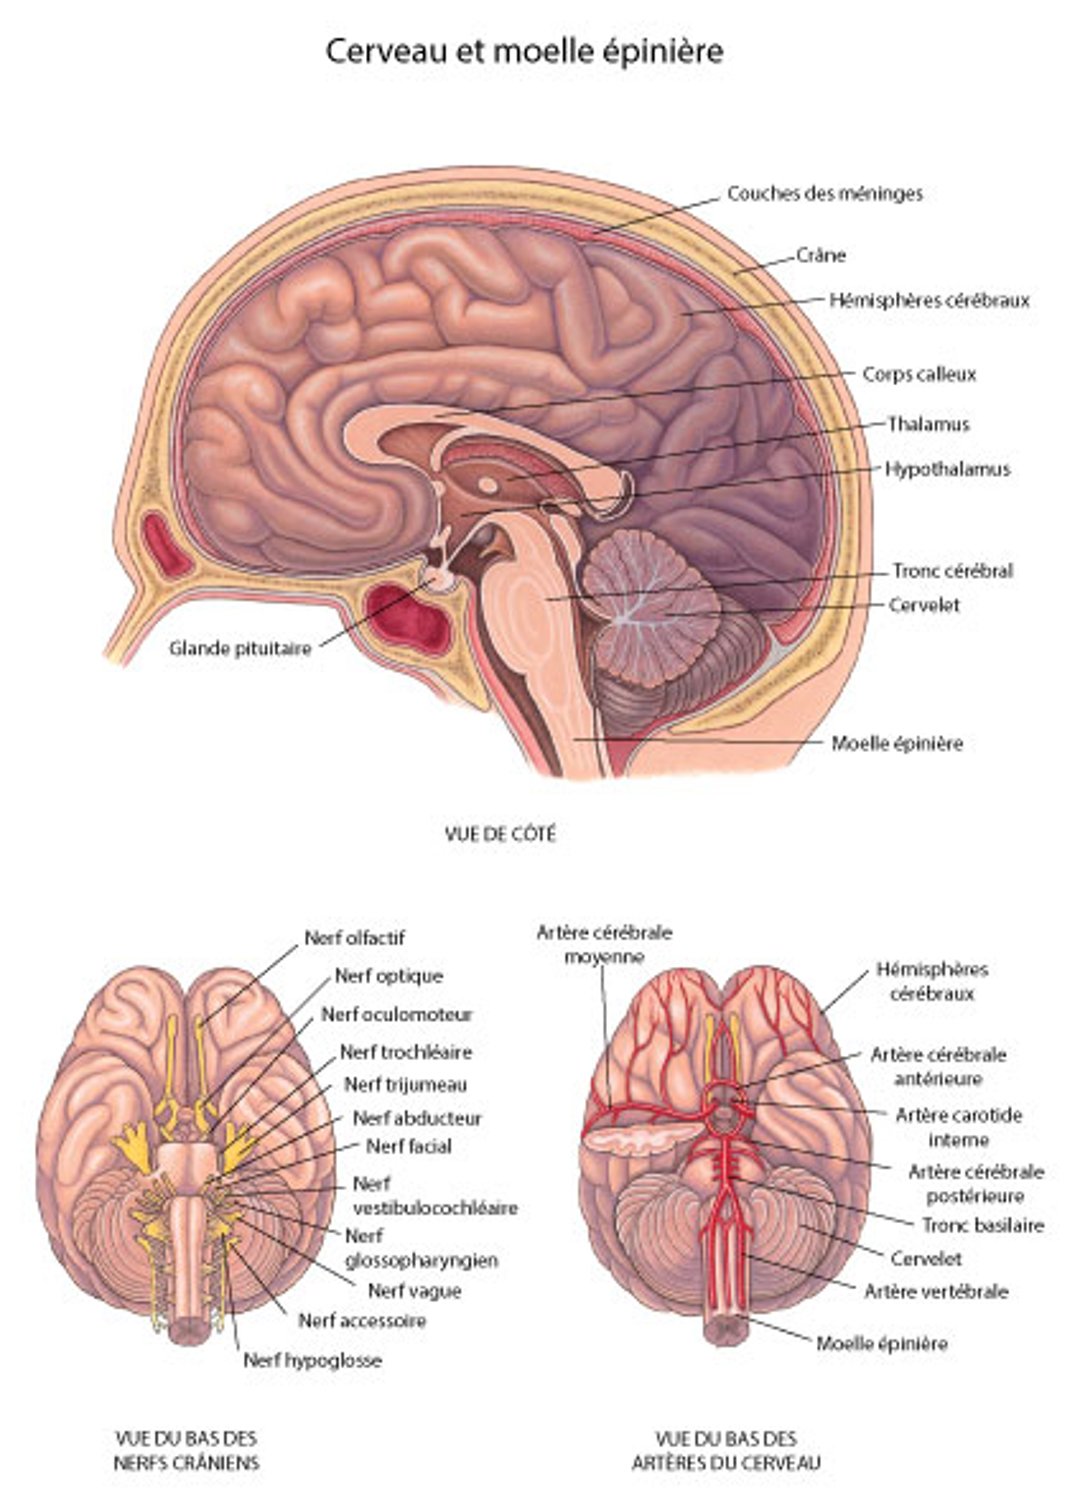 Cerveau : Nerfs et artères